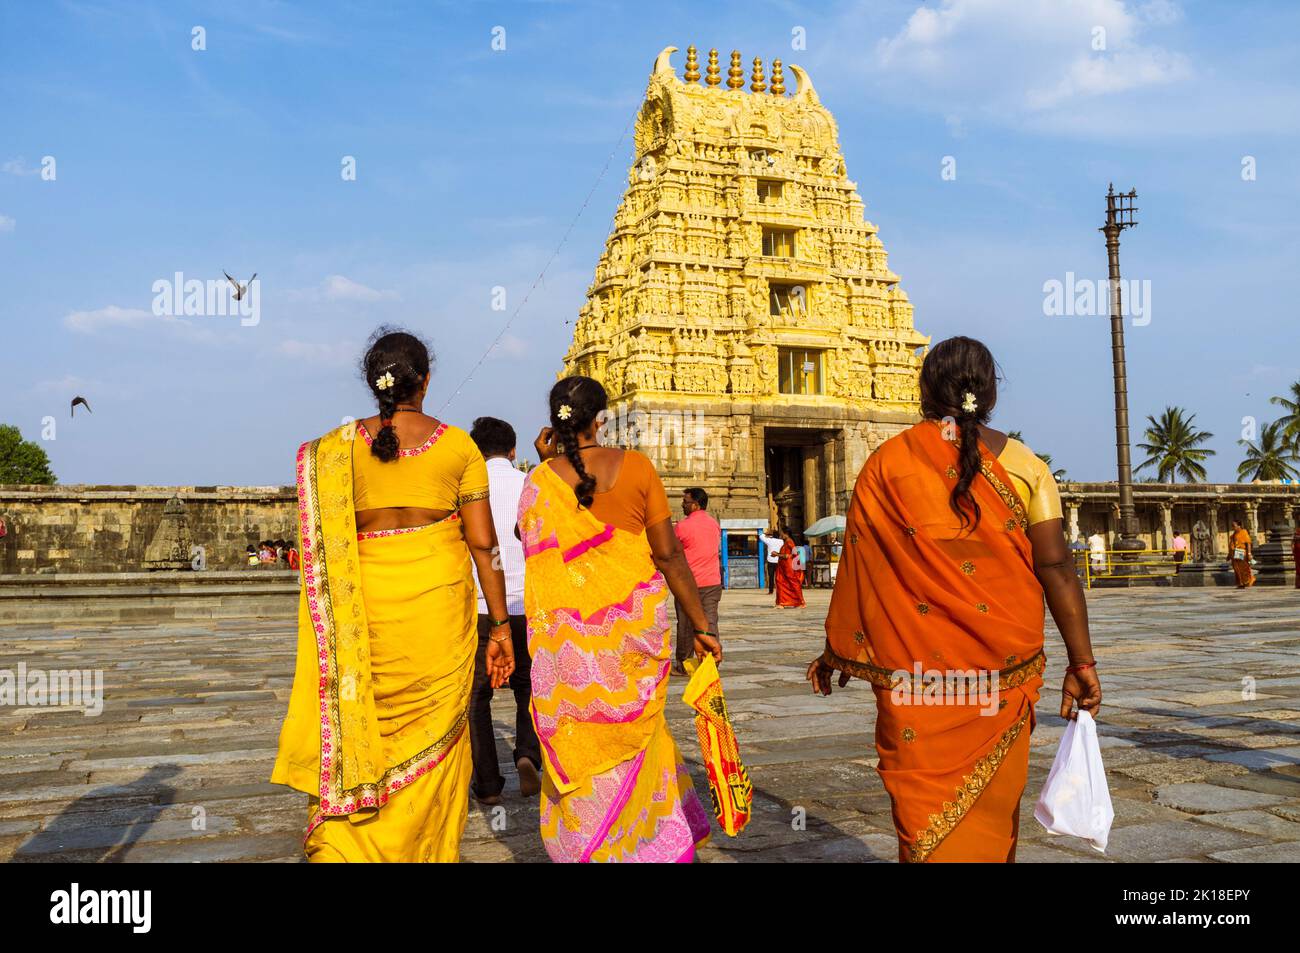 Belur, Karnataka, Indien : drei Frauen in bunten Saris gehen zum Gopuram-Tor des Channakeshava-Tempels aus dem 12.. Jahrhundert. Stockfoto